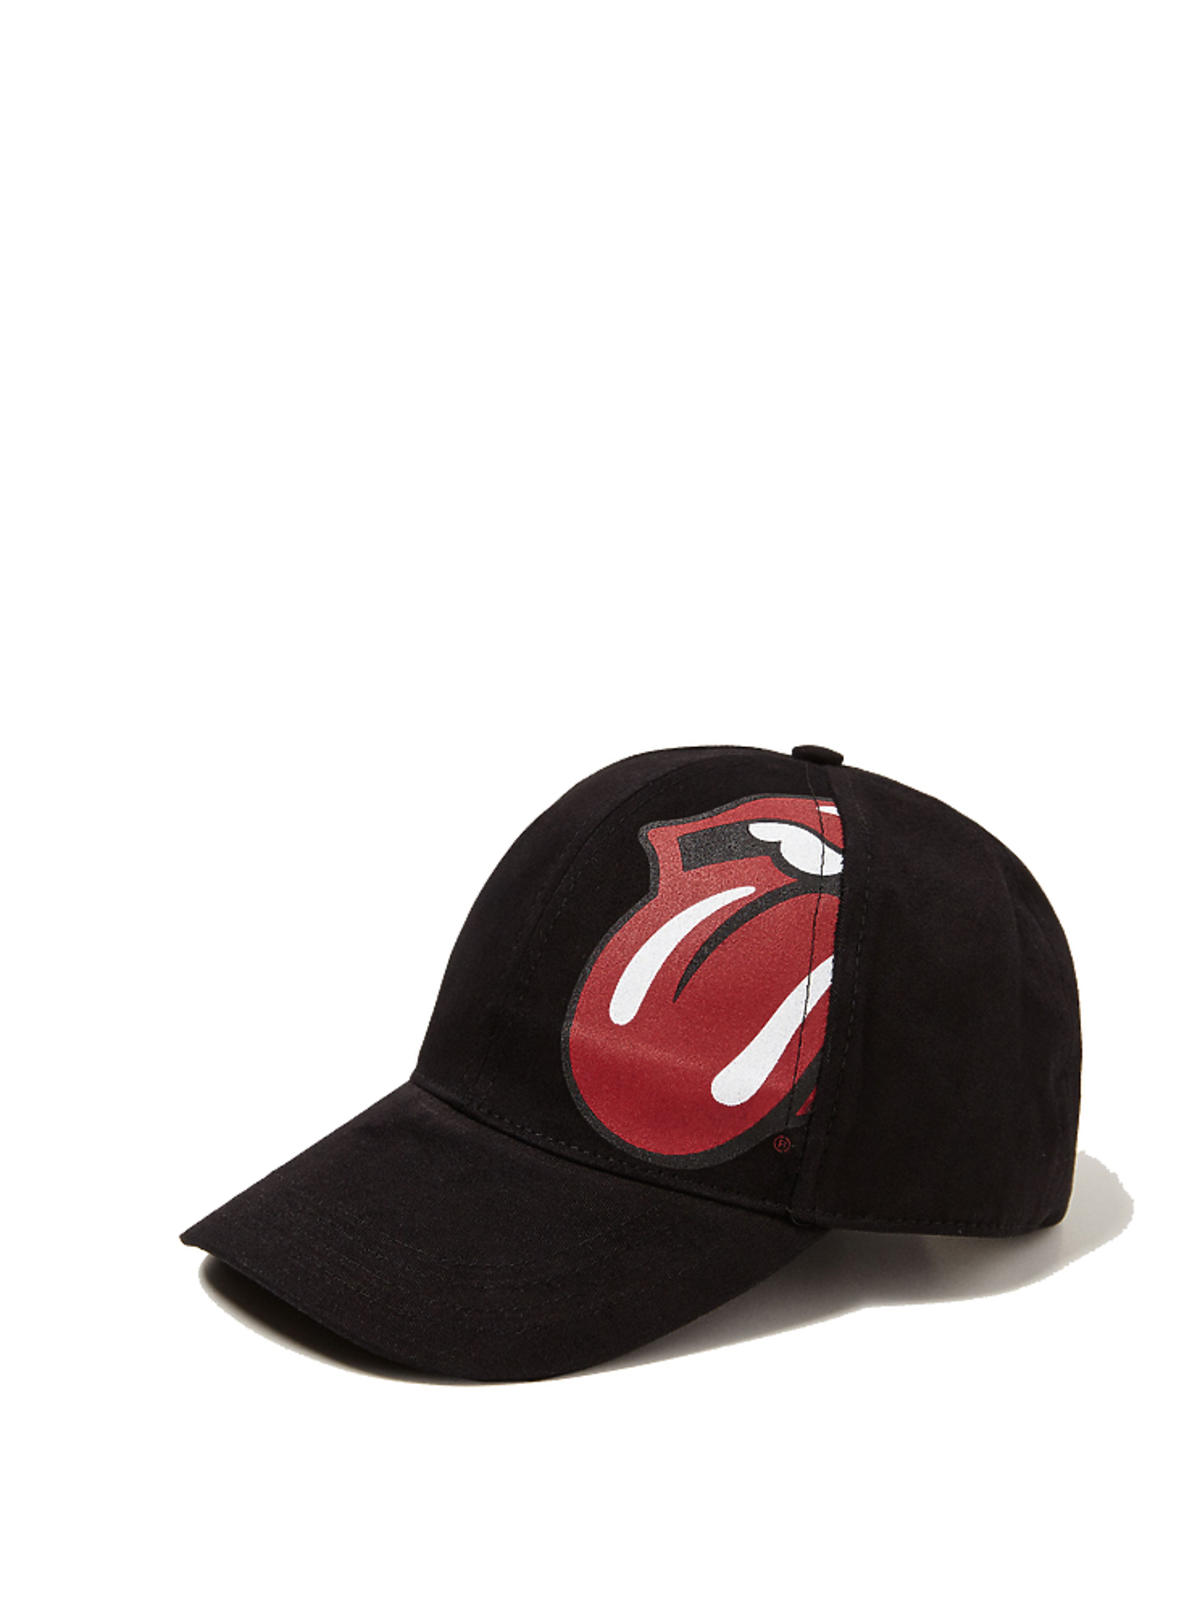 Czapka Rolling Stones Zara, 59,90 zł